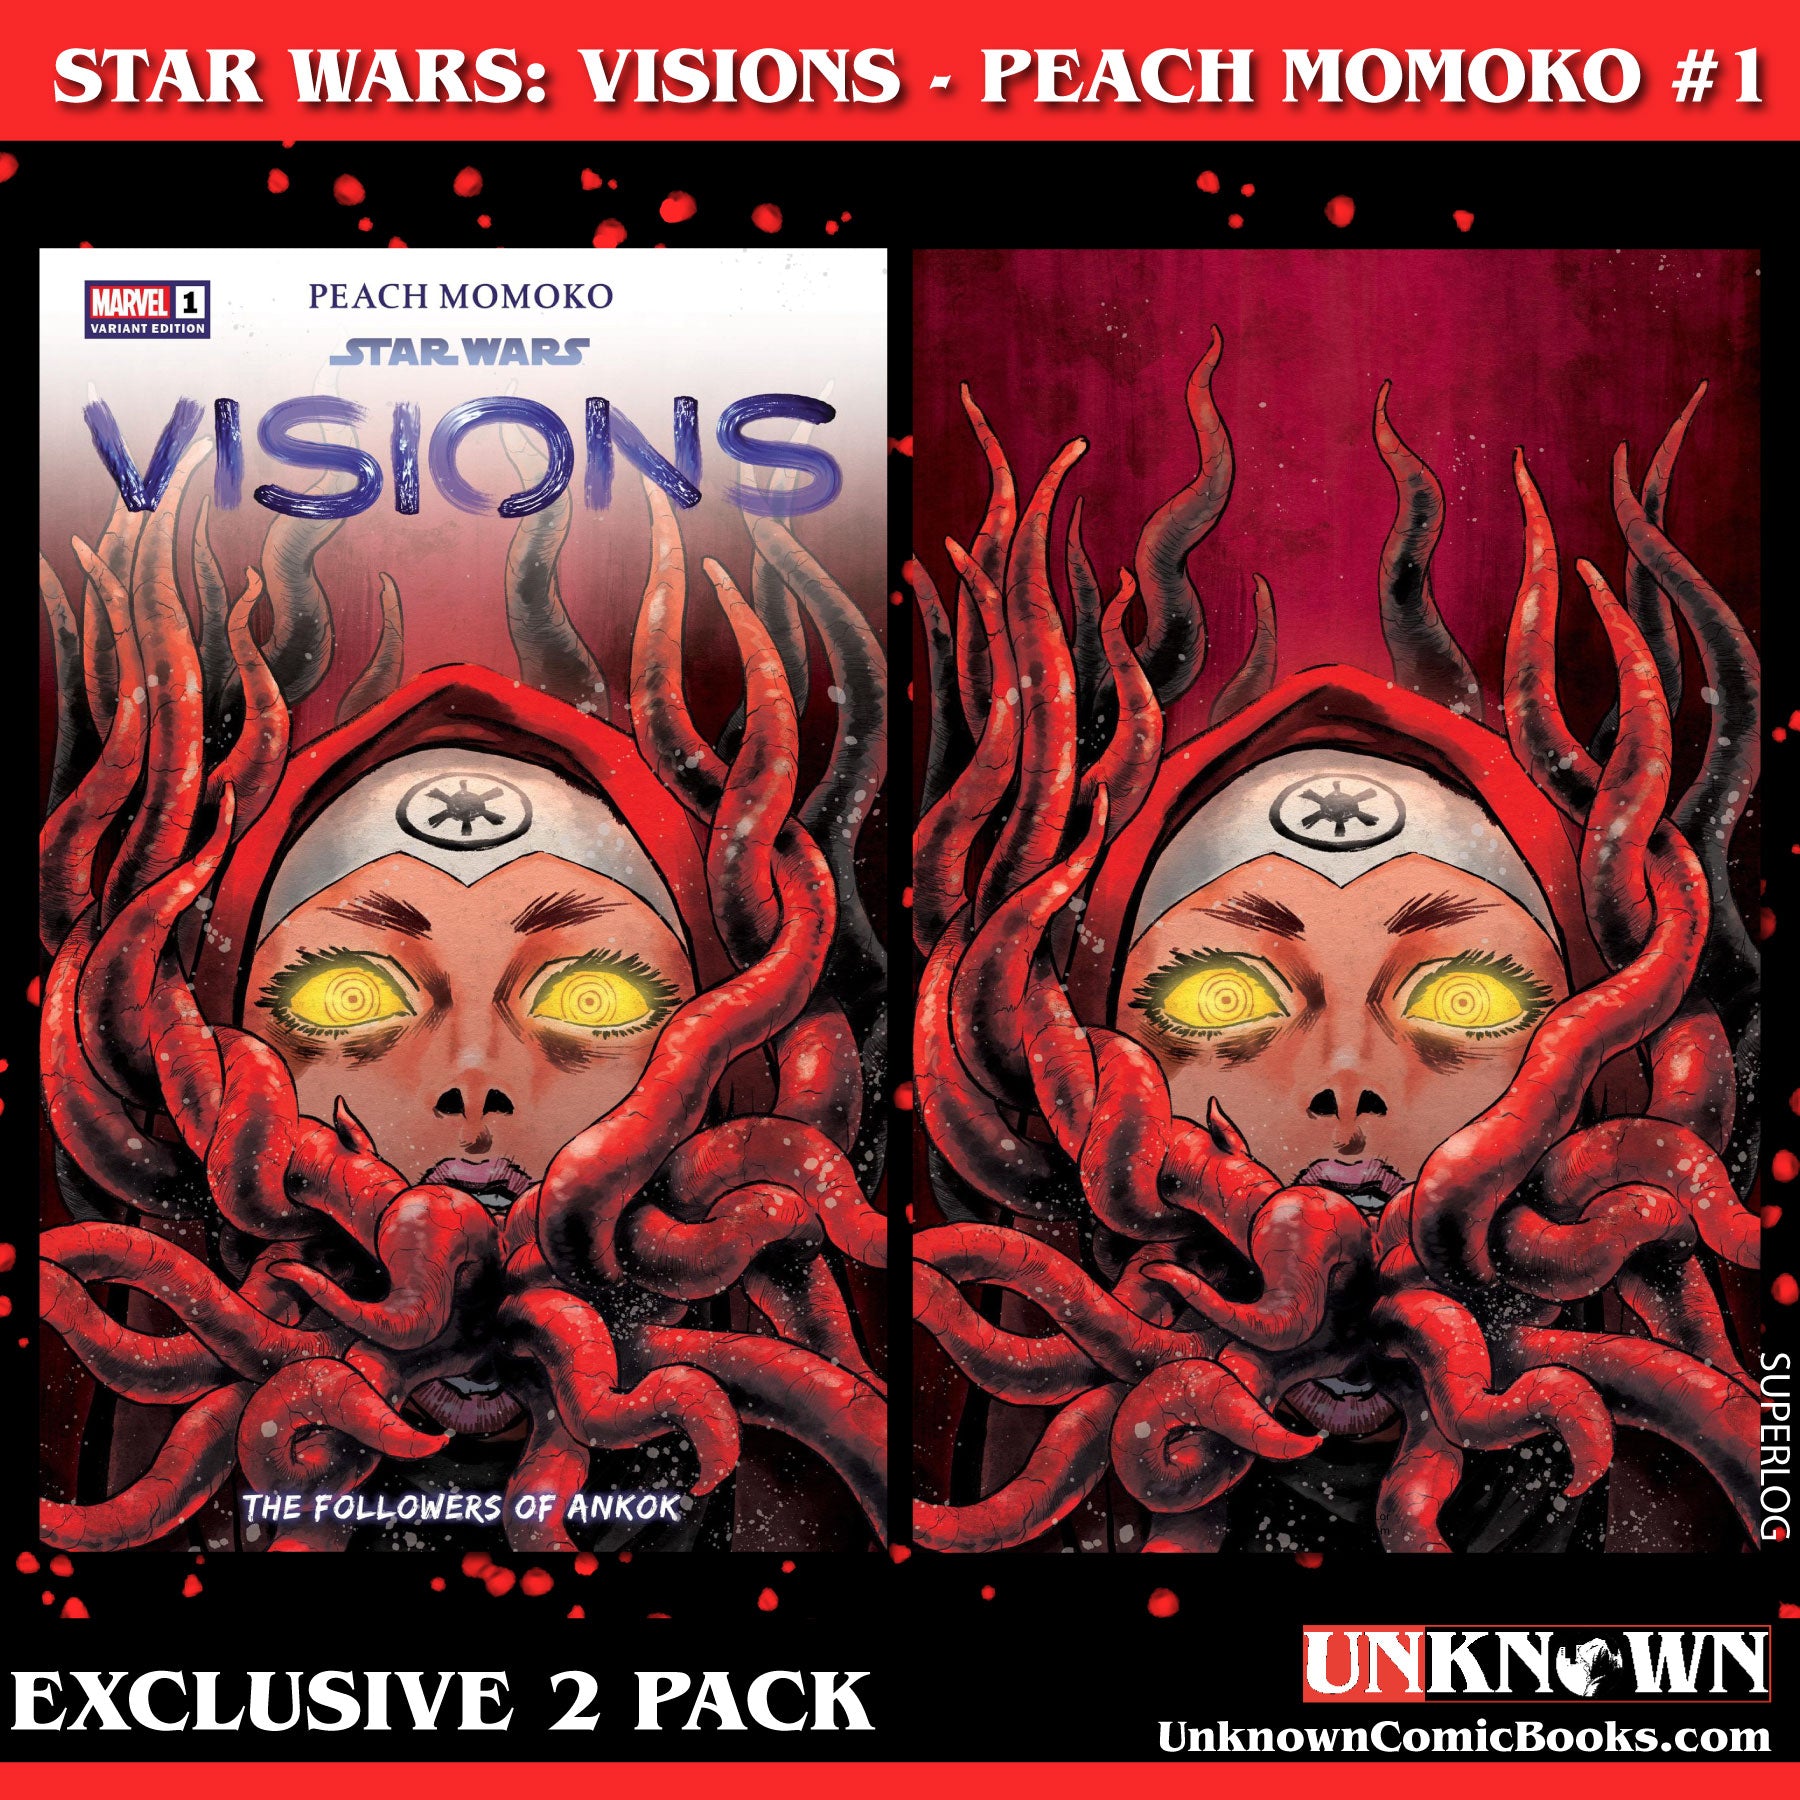 Star Wars: Visions - Peach Momoko' #1 Brings Her Unique